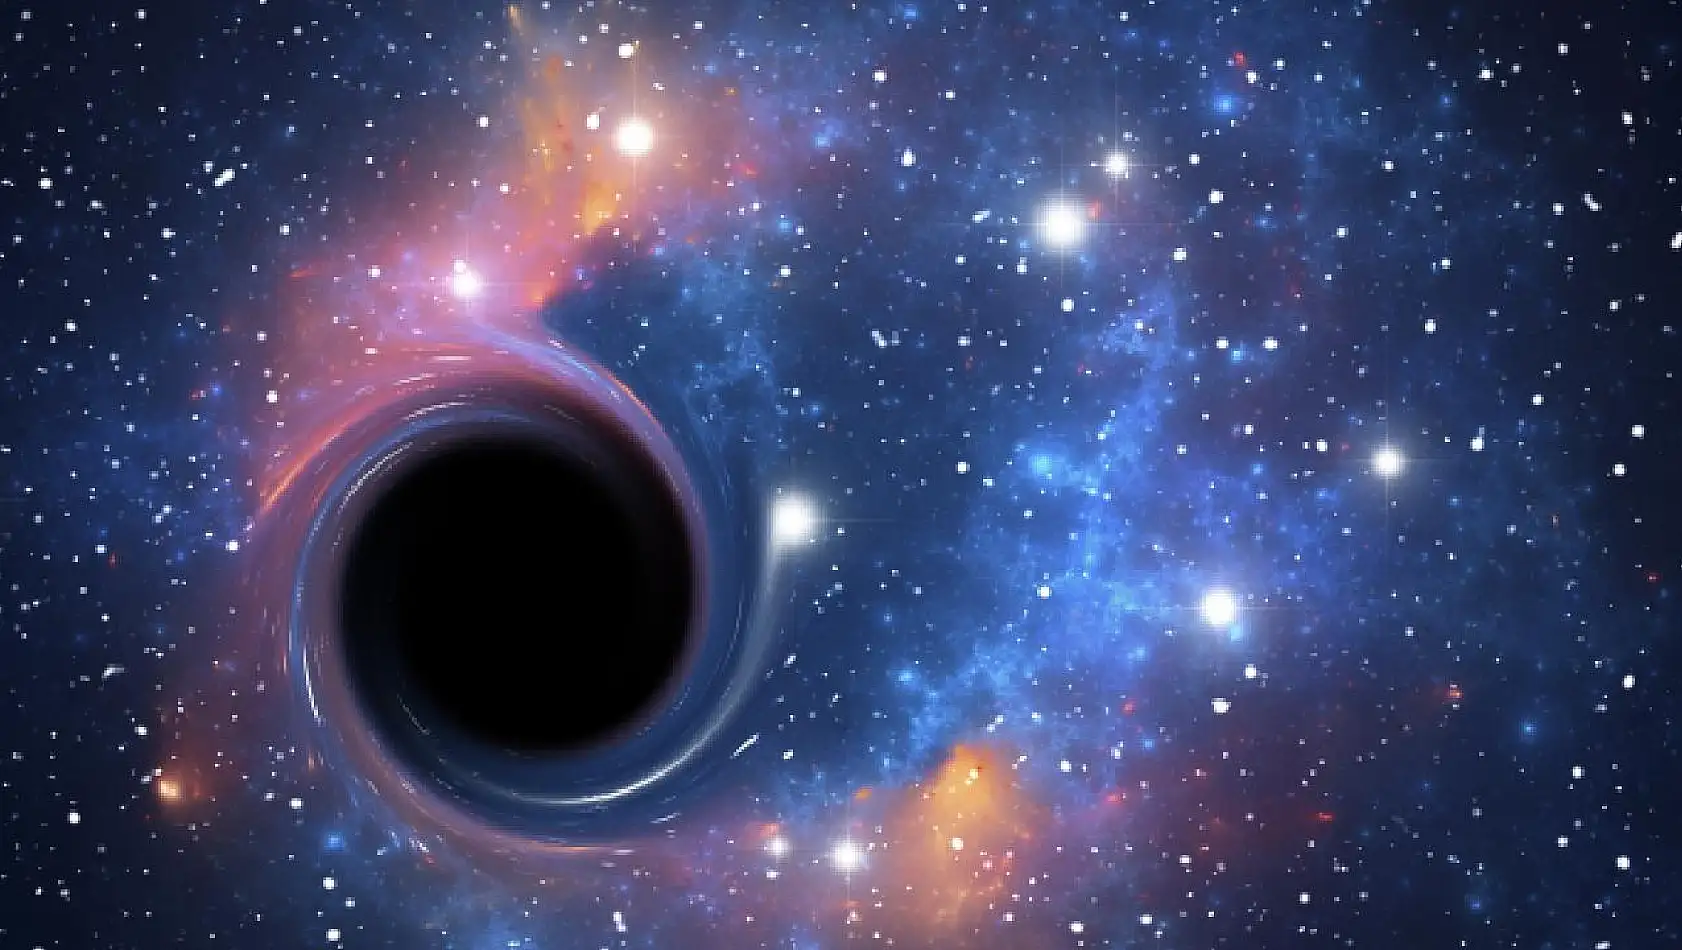 Kara delikler nedir? Kara delikler hangi alanın inceleme konusudur?